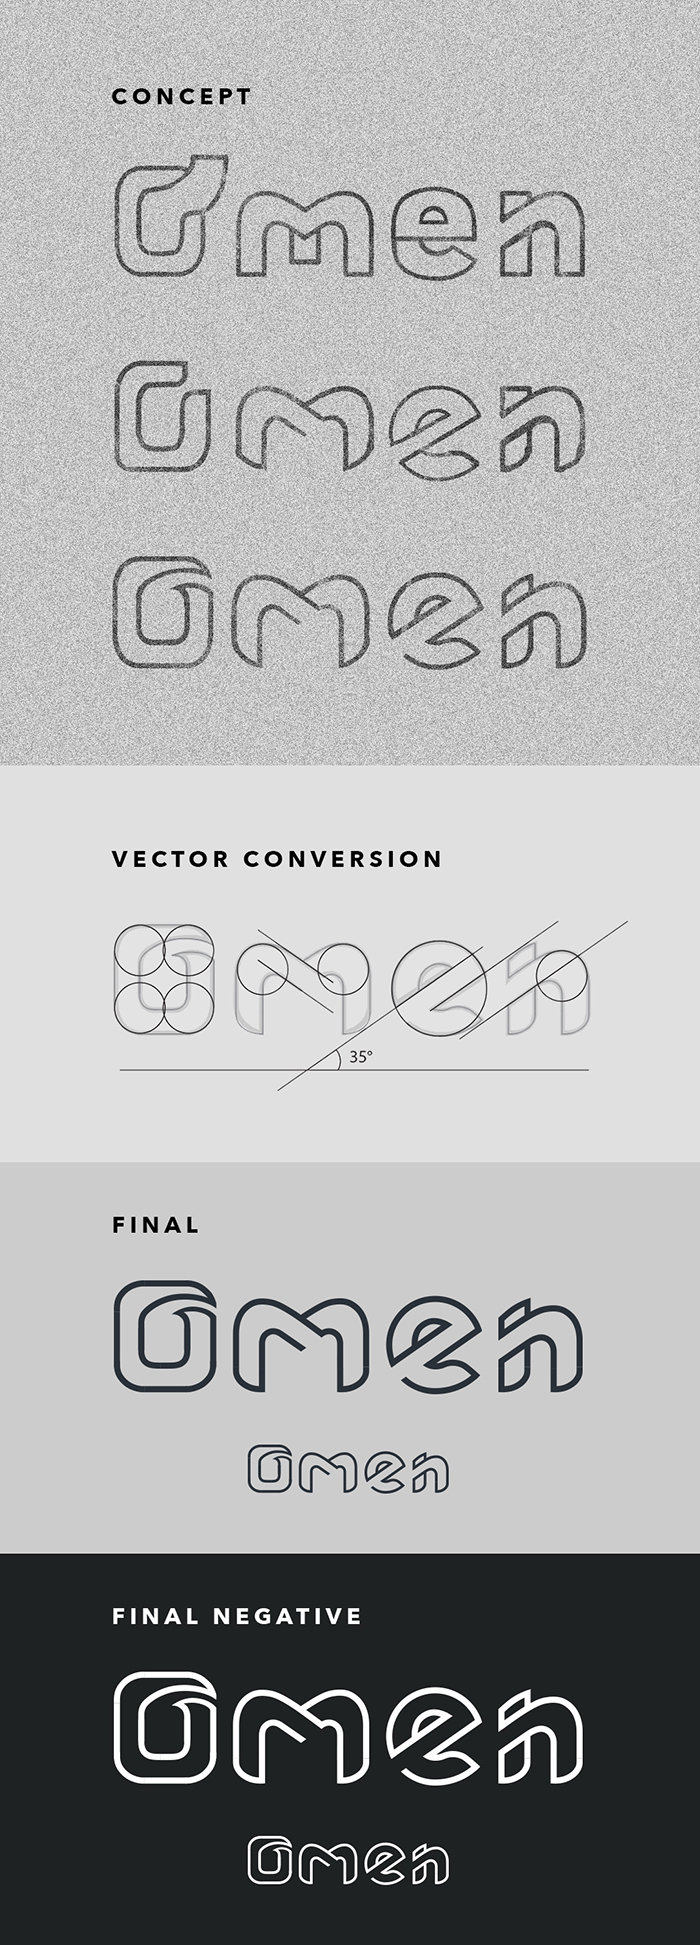 logos vector